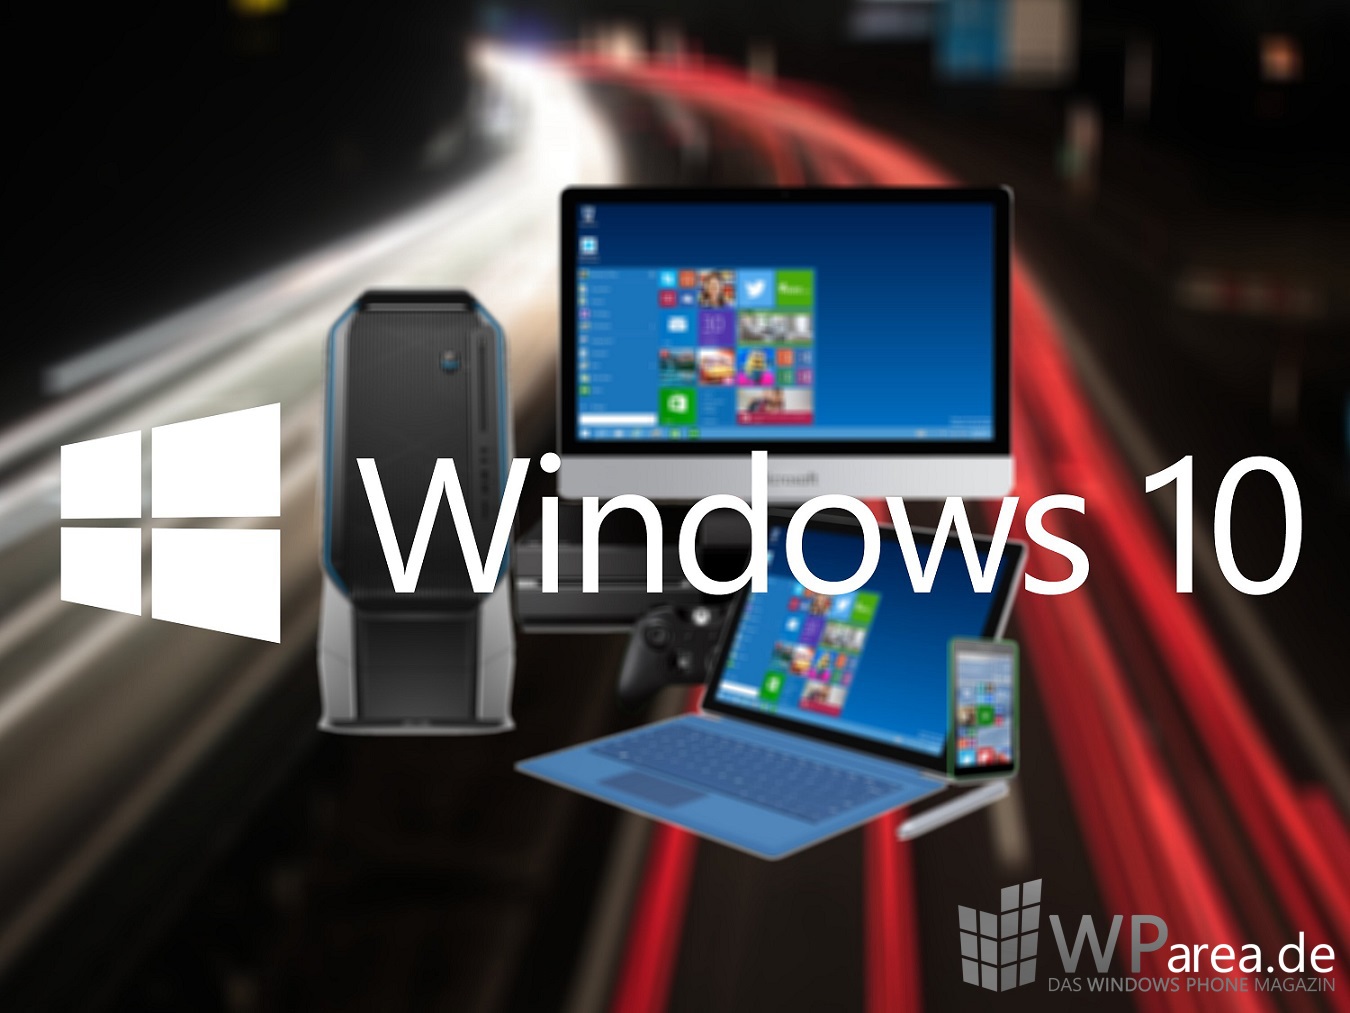 Windows 10 Geräte WParea.de